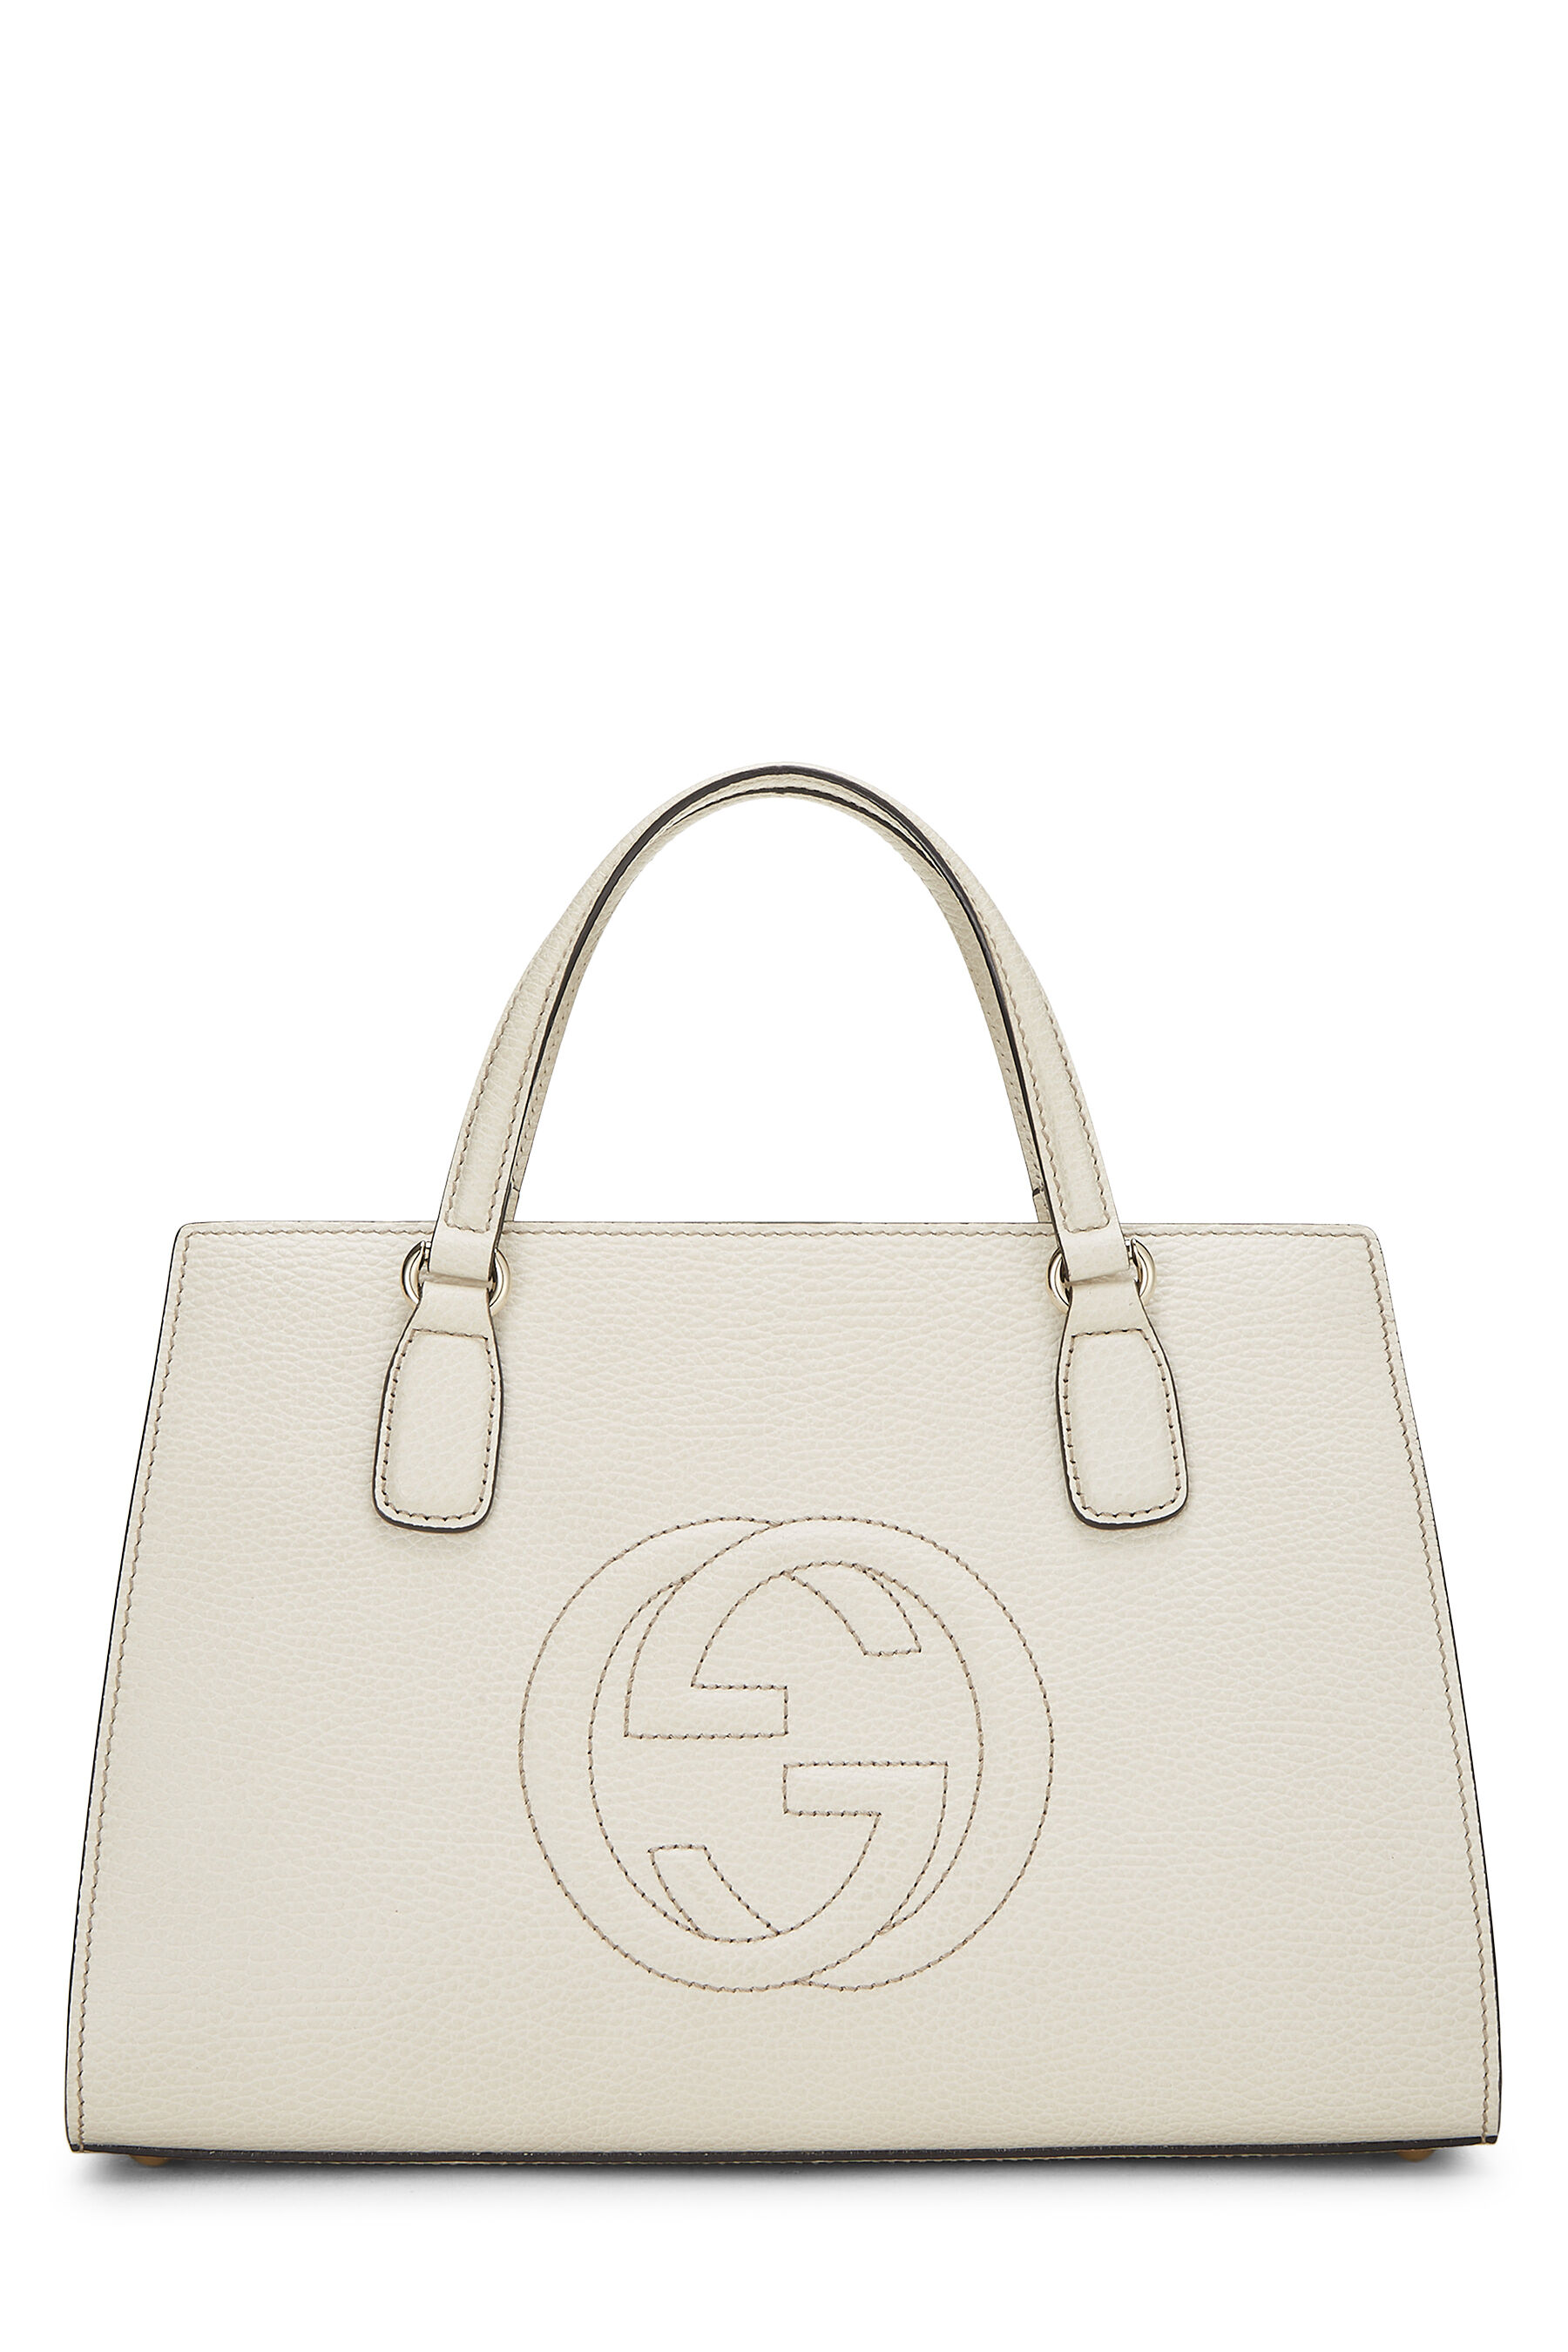 White Grained Leather Soho Handbag Large